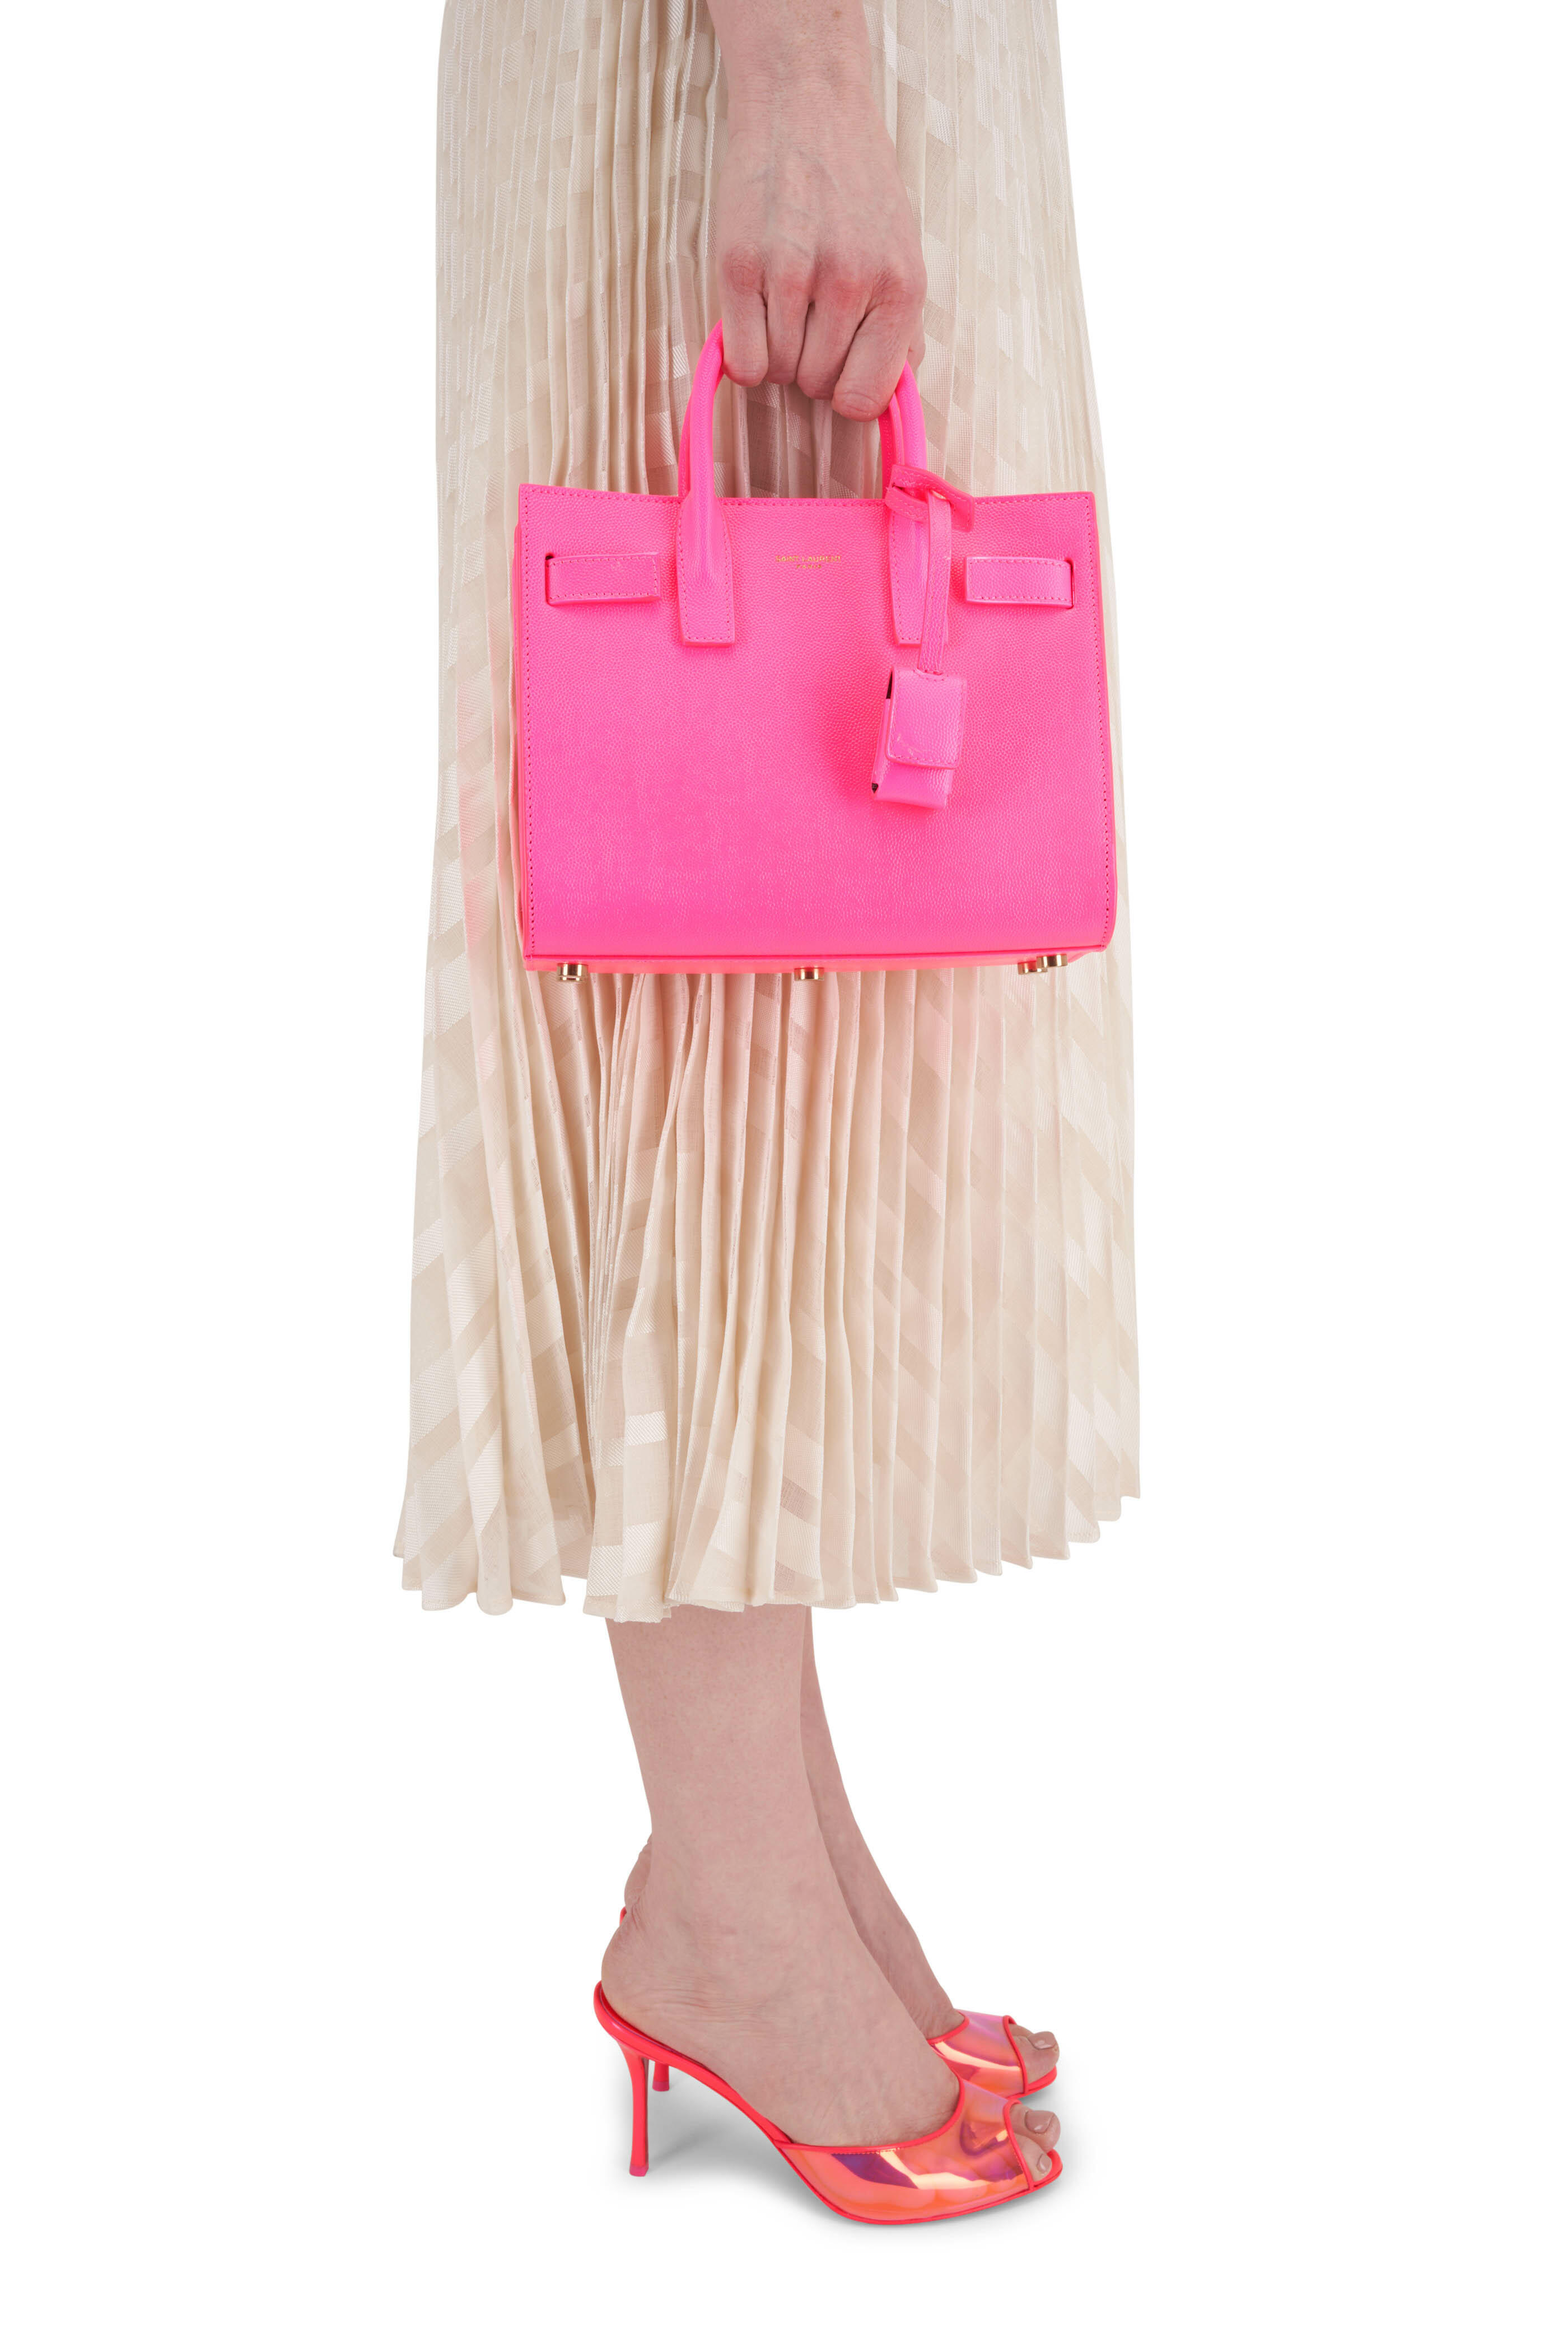 Saint Laurent Nano Sac De Jour Neon Leather Top Handle Bag In Pink